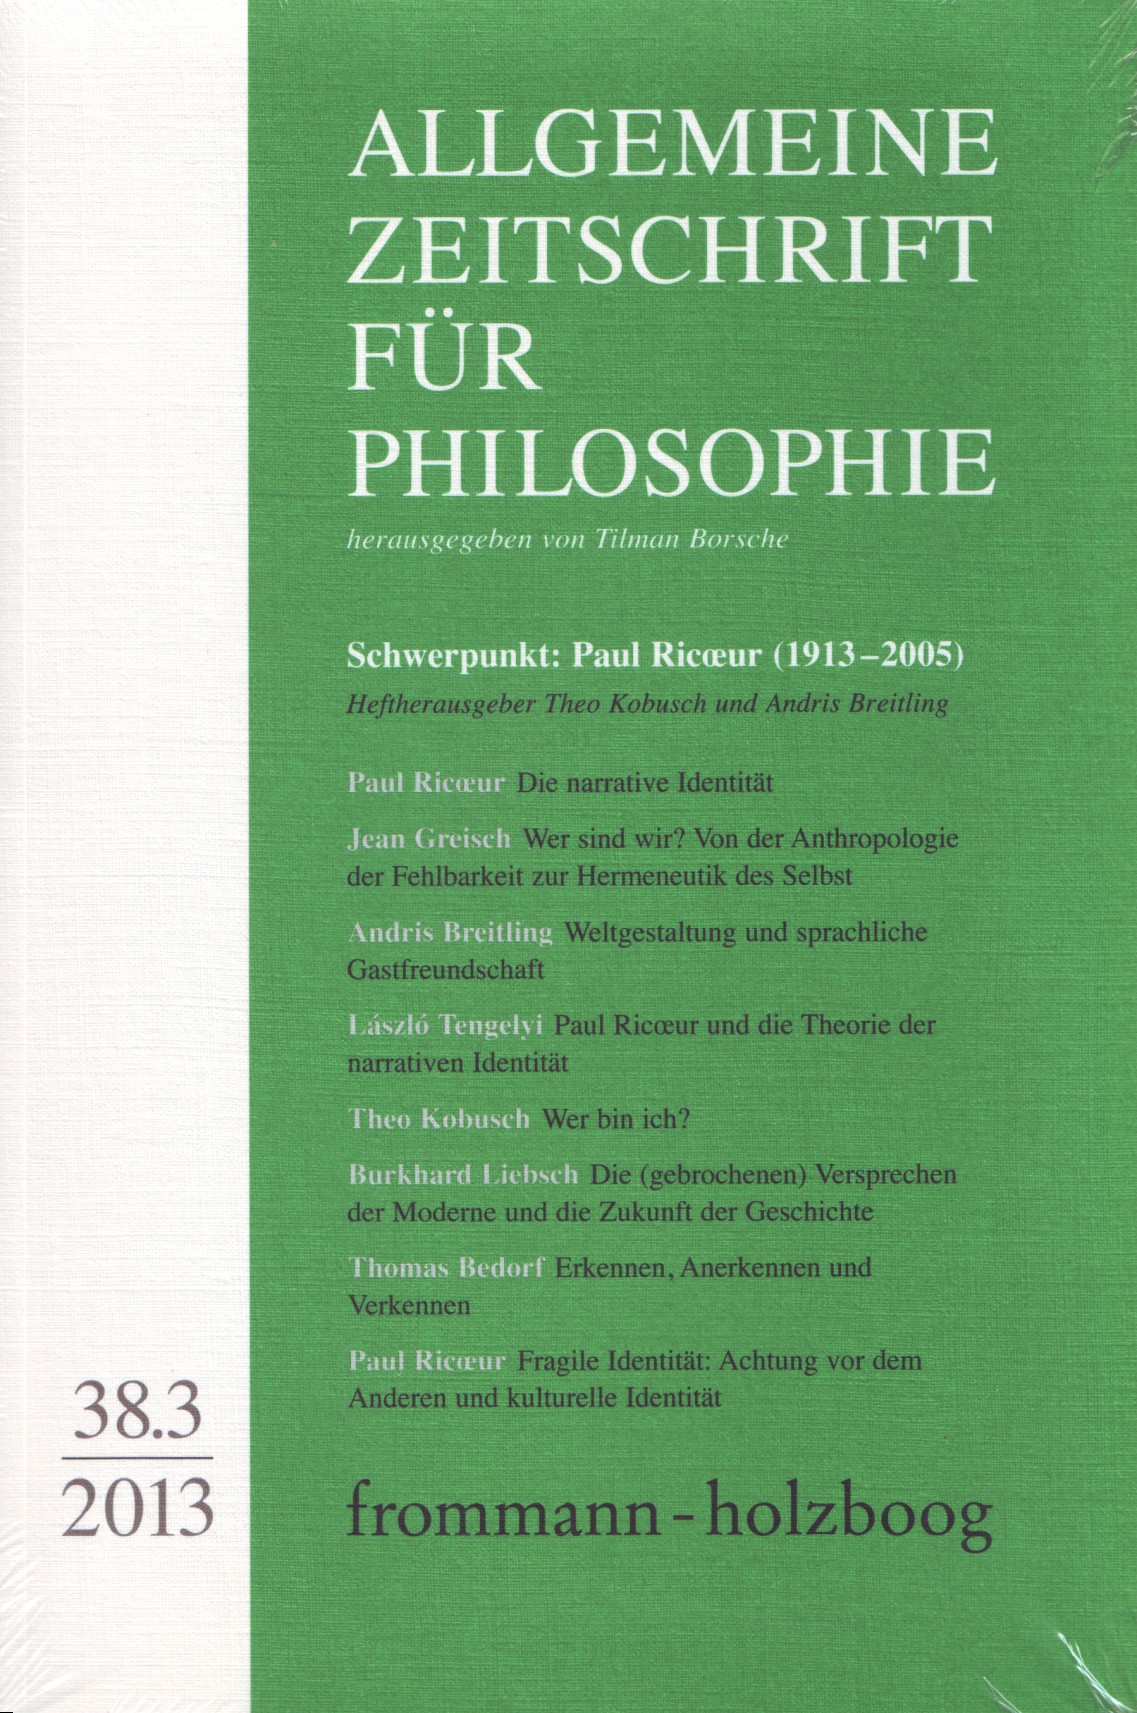 Allgemeine Zeitschrift für Philosophie AZP